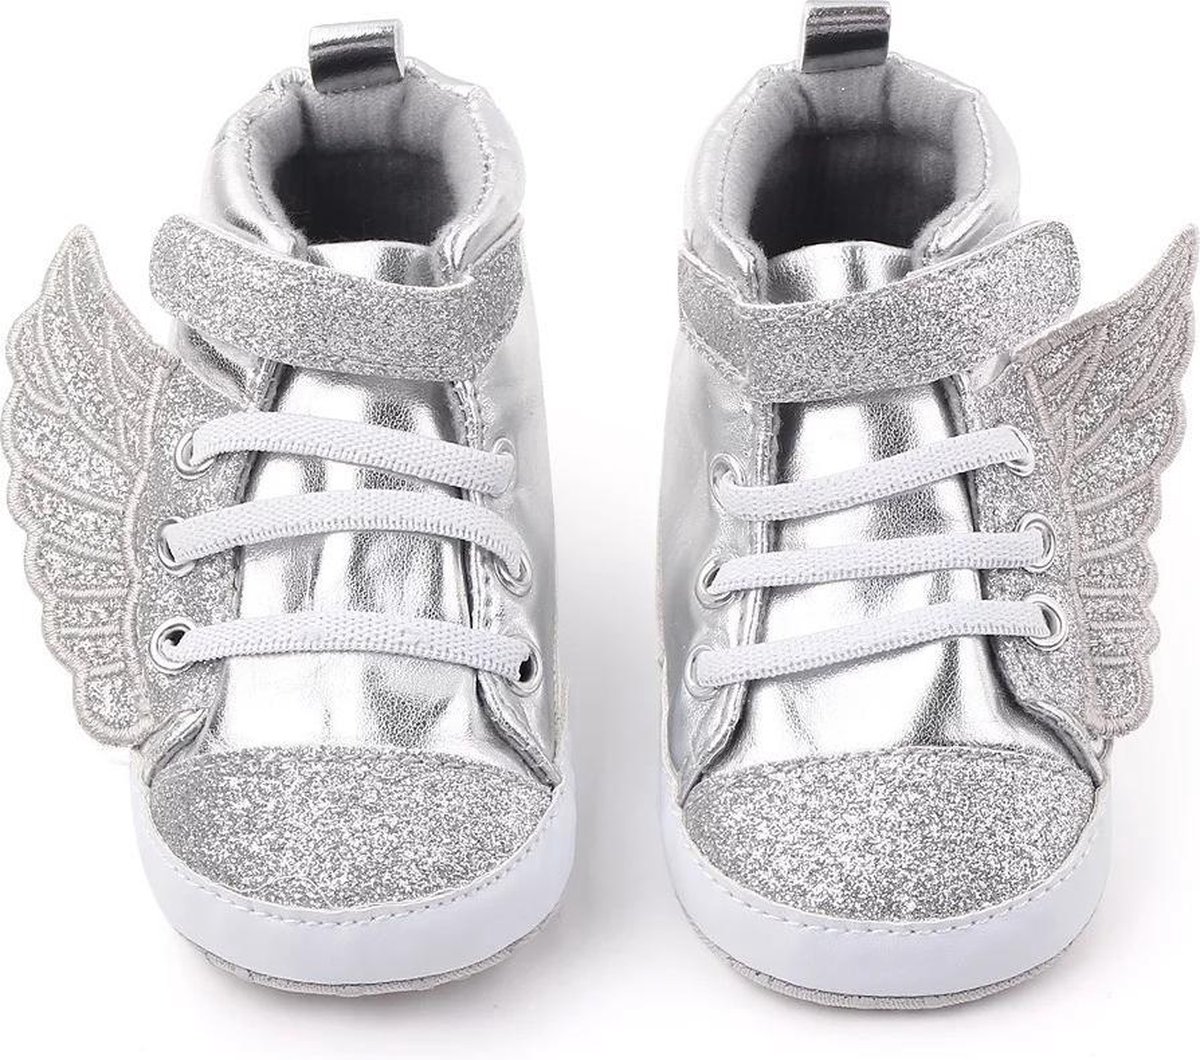 Supercute baby sneakers Wings zilver 12 t m 18 maanden